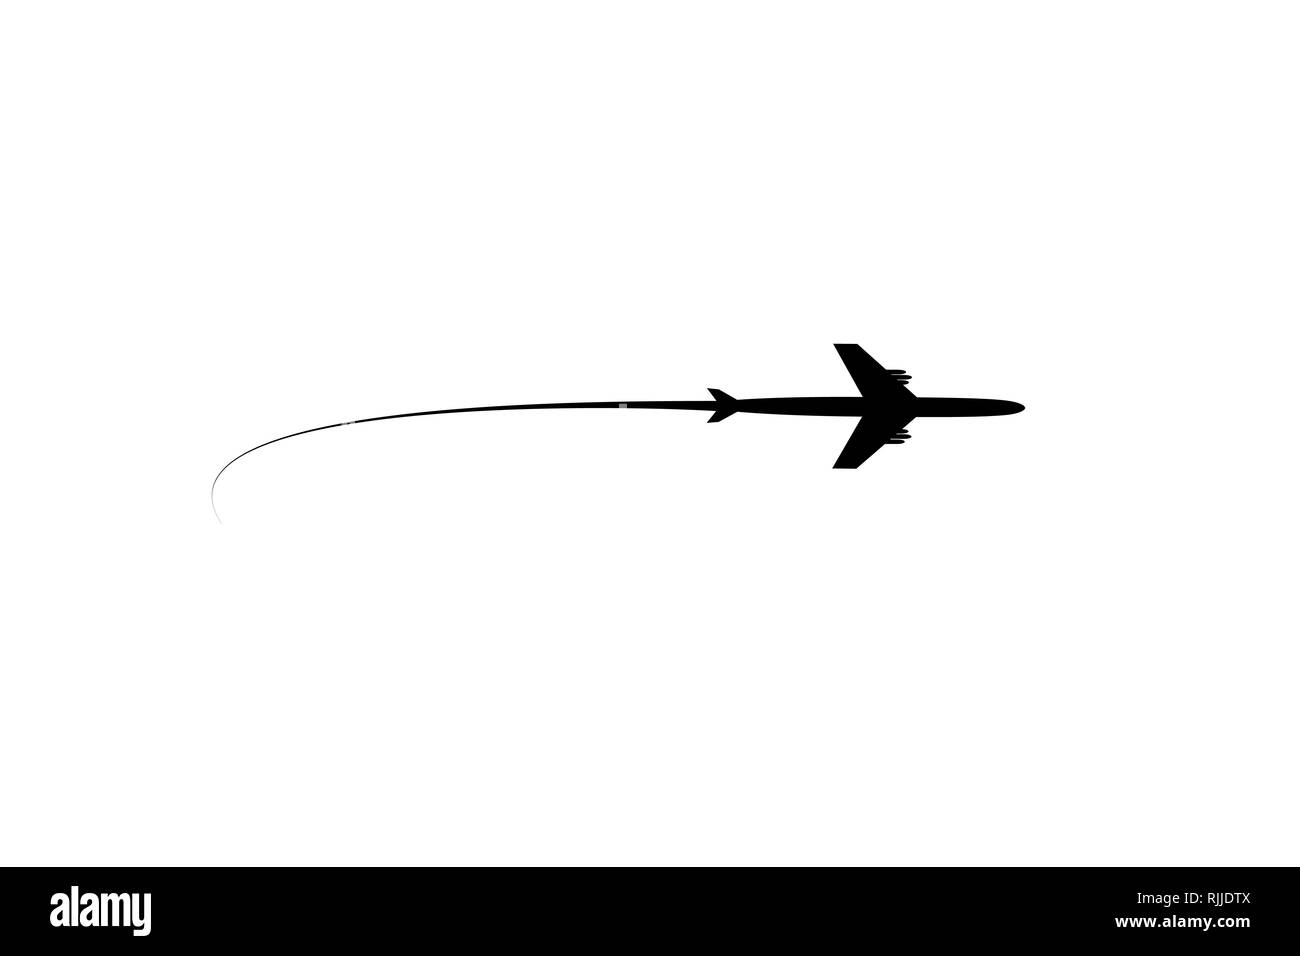 L'avion vole sur la ligne. Le tourisme et les voyages. Le waypoint est conçu pour un voyage touristique. et son tracé sur un fond blanc. Vector illustration Illustration de Vecteur